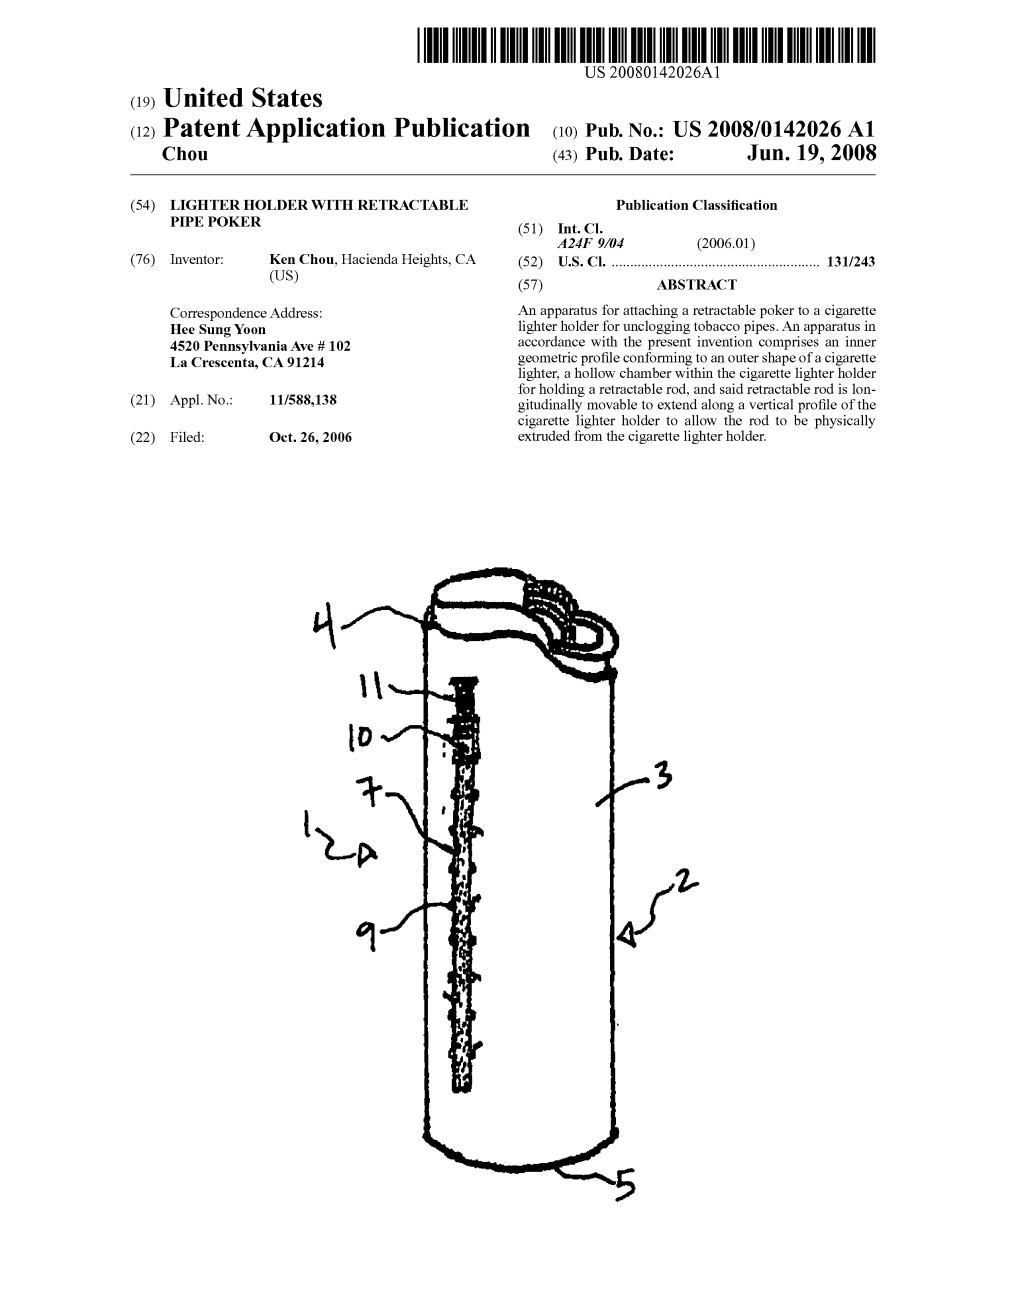 (12) Patent Application Publication (10) Pub. No.: US 2008/014202.6 A1 Chou (43) Pub